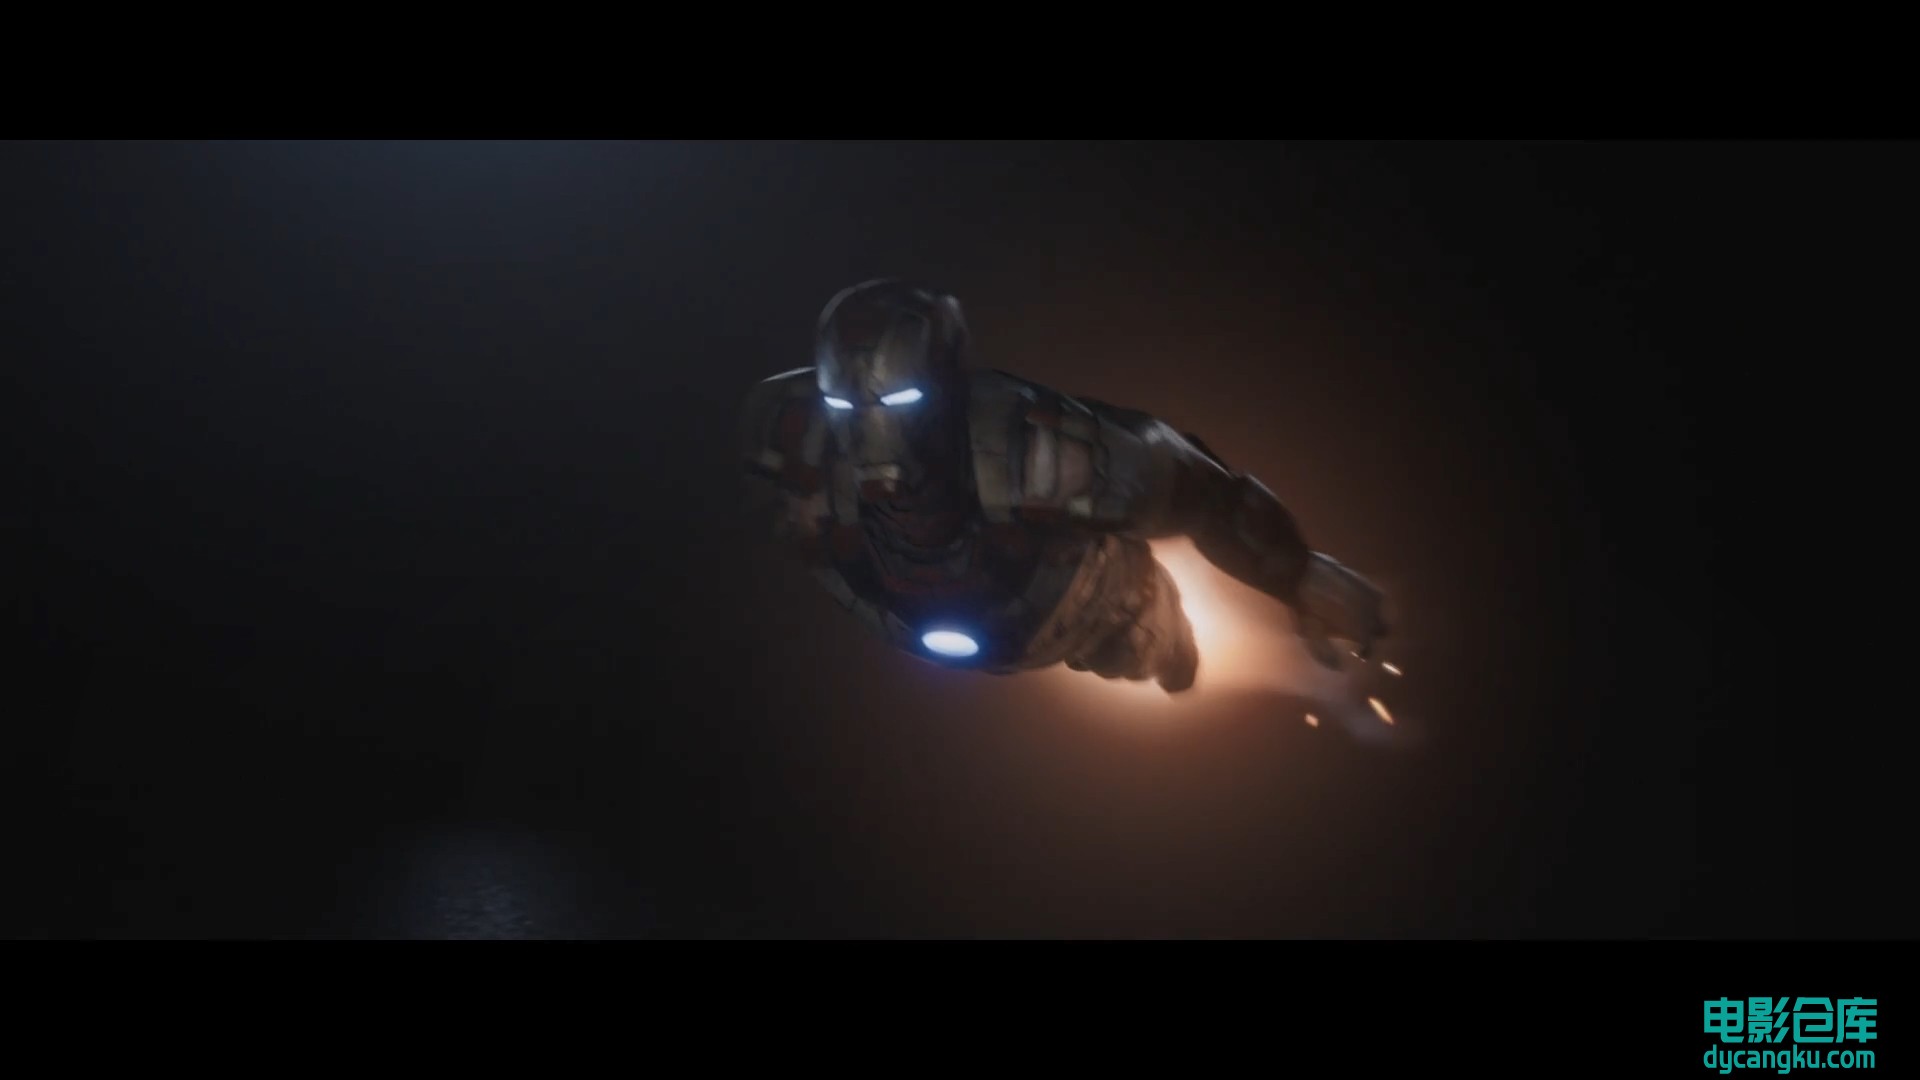 [电影仓库dycangku.com]钢铁侠3.Iron.Man.3.2013.BluRay.1080p.x264.DTS.AAC.国英双语.jpg